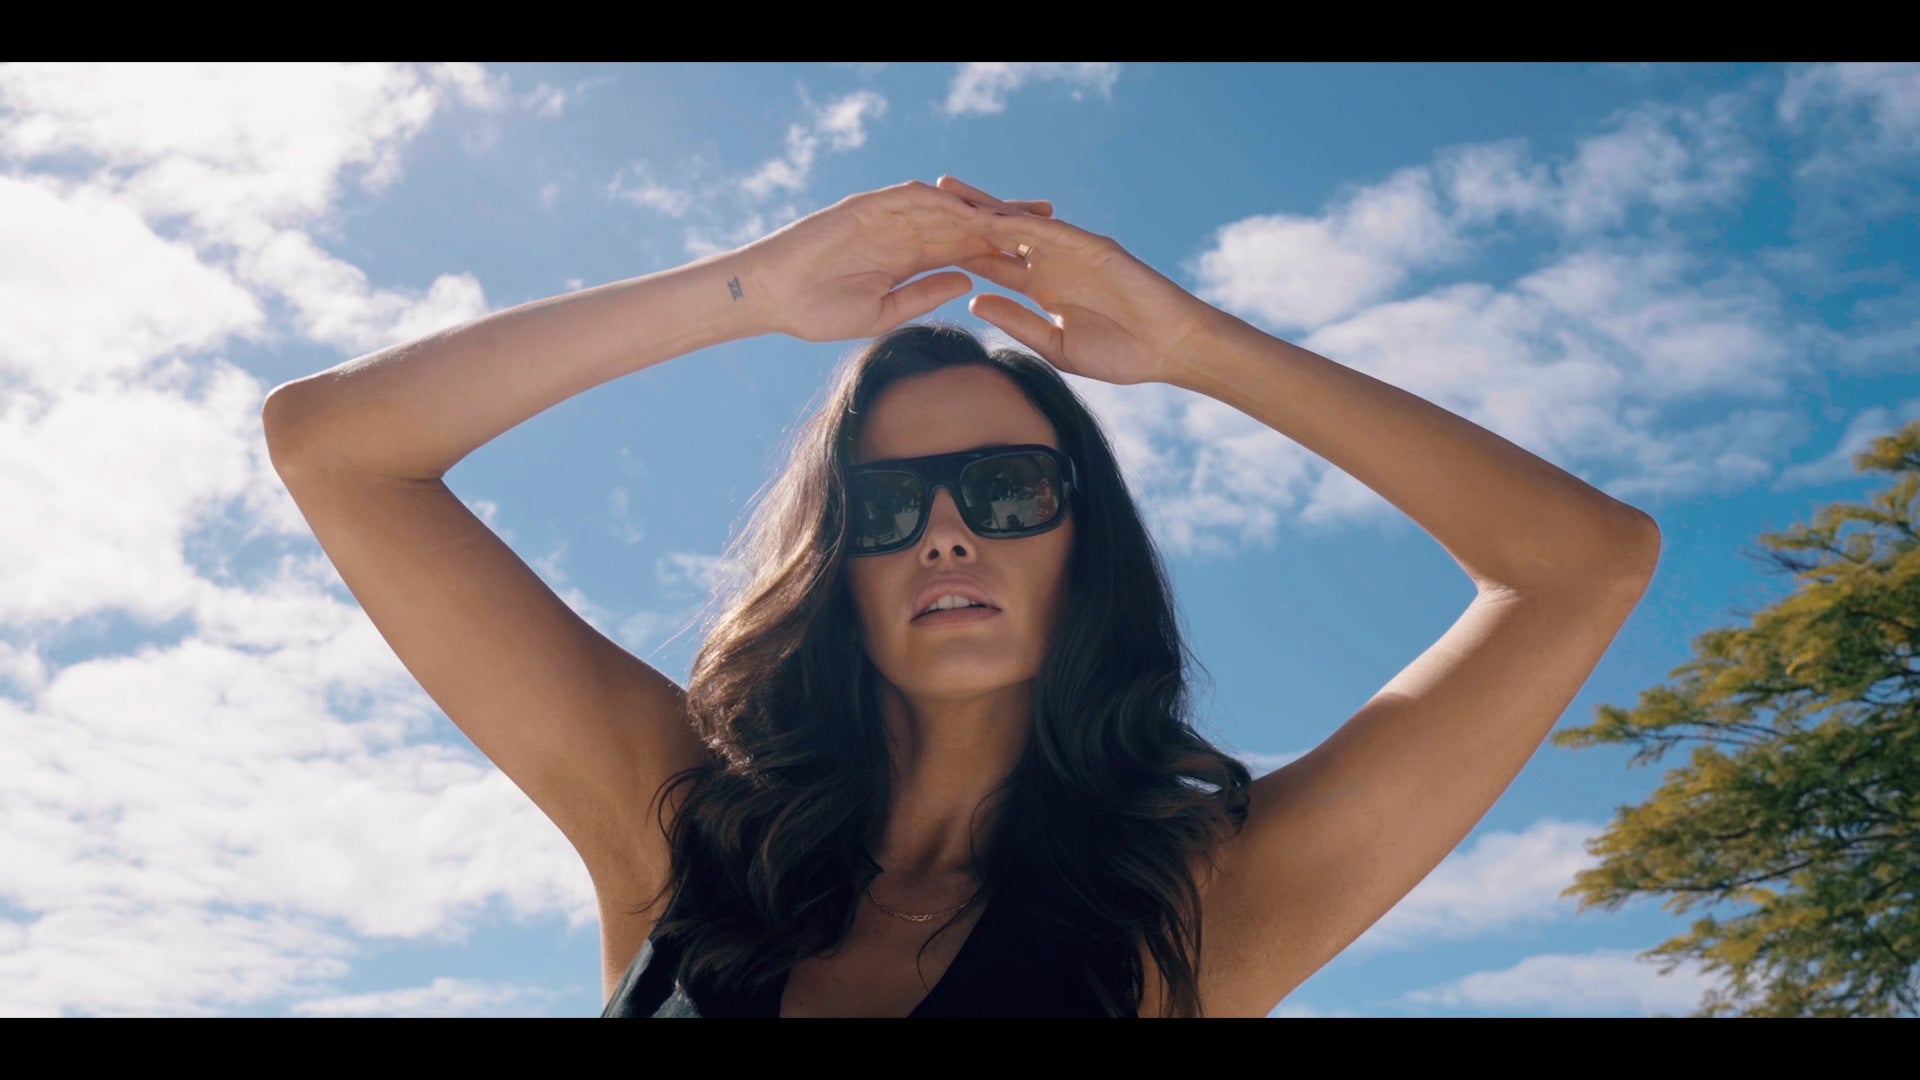 New Video: Soleil et Lumière Campaign Trailer